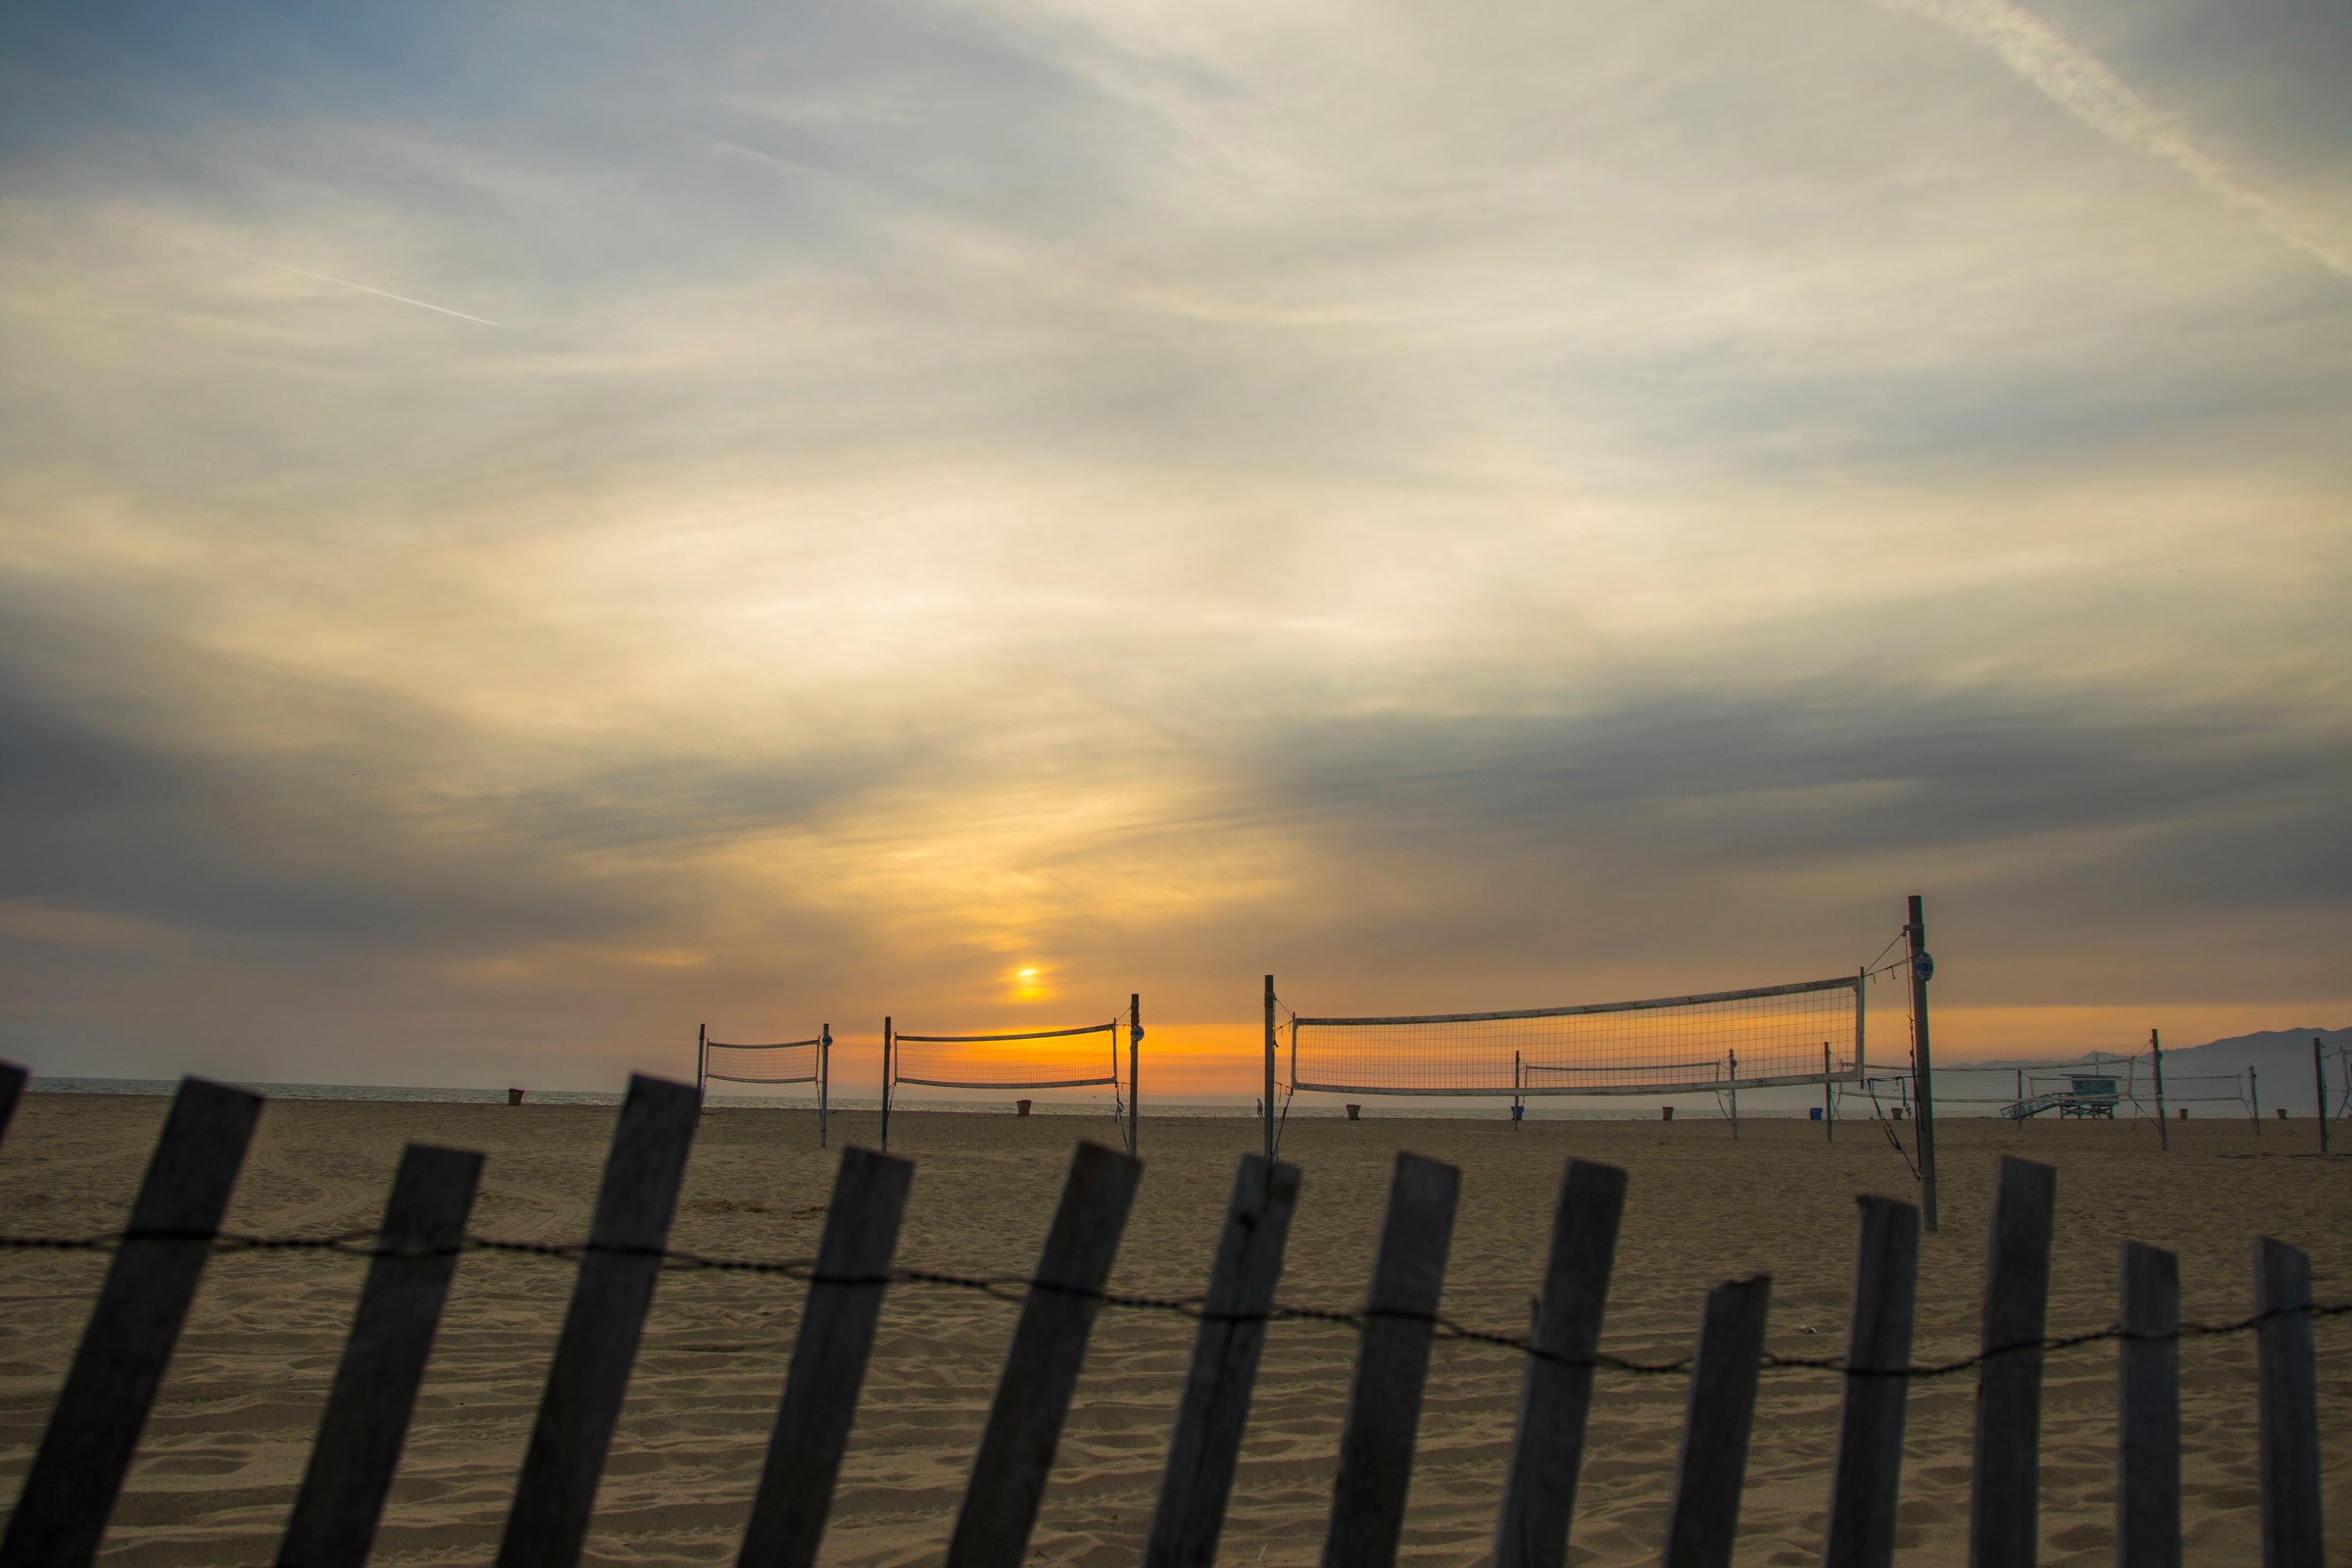 Auf dem Bild sind mehrere Beach-Volleyballfelder zu sehen. Im Hintergrund erkennt man das Meer und einen schönen Sonnenuntergang. Für einen Ausflug an einen solchen Ort ist Deine 720DGREE Flasche die beste Begleitung!